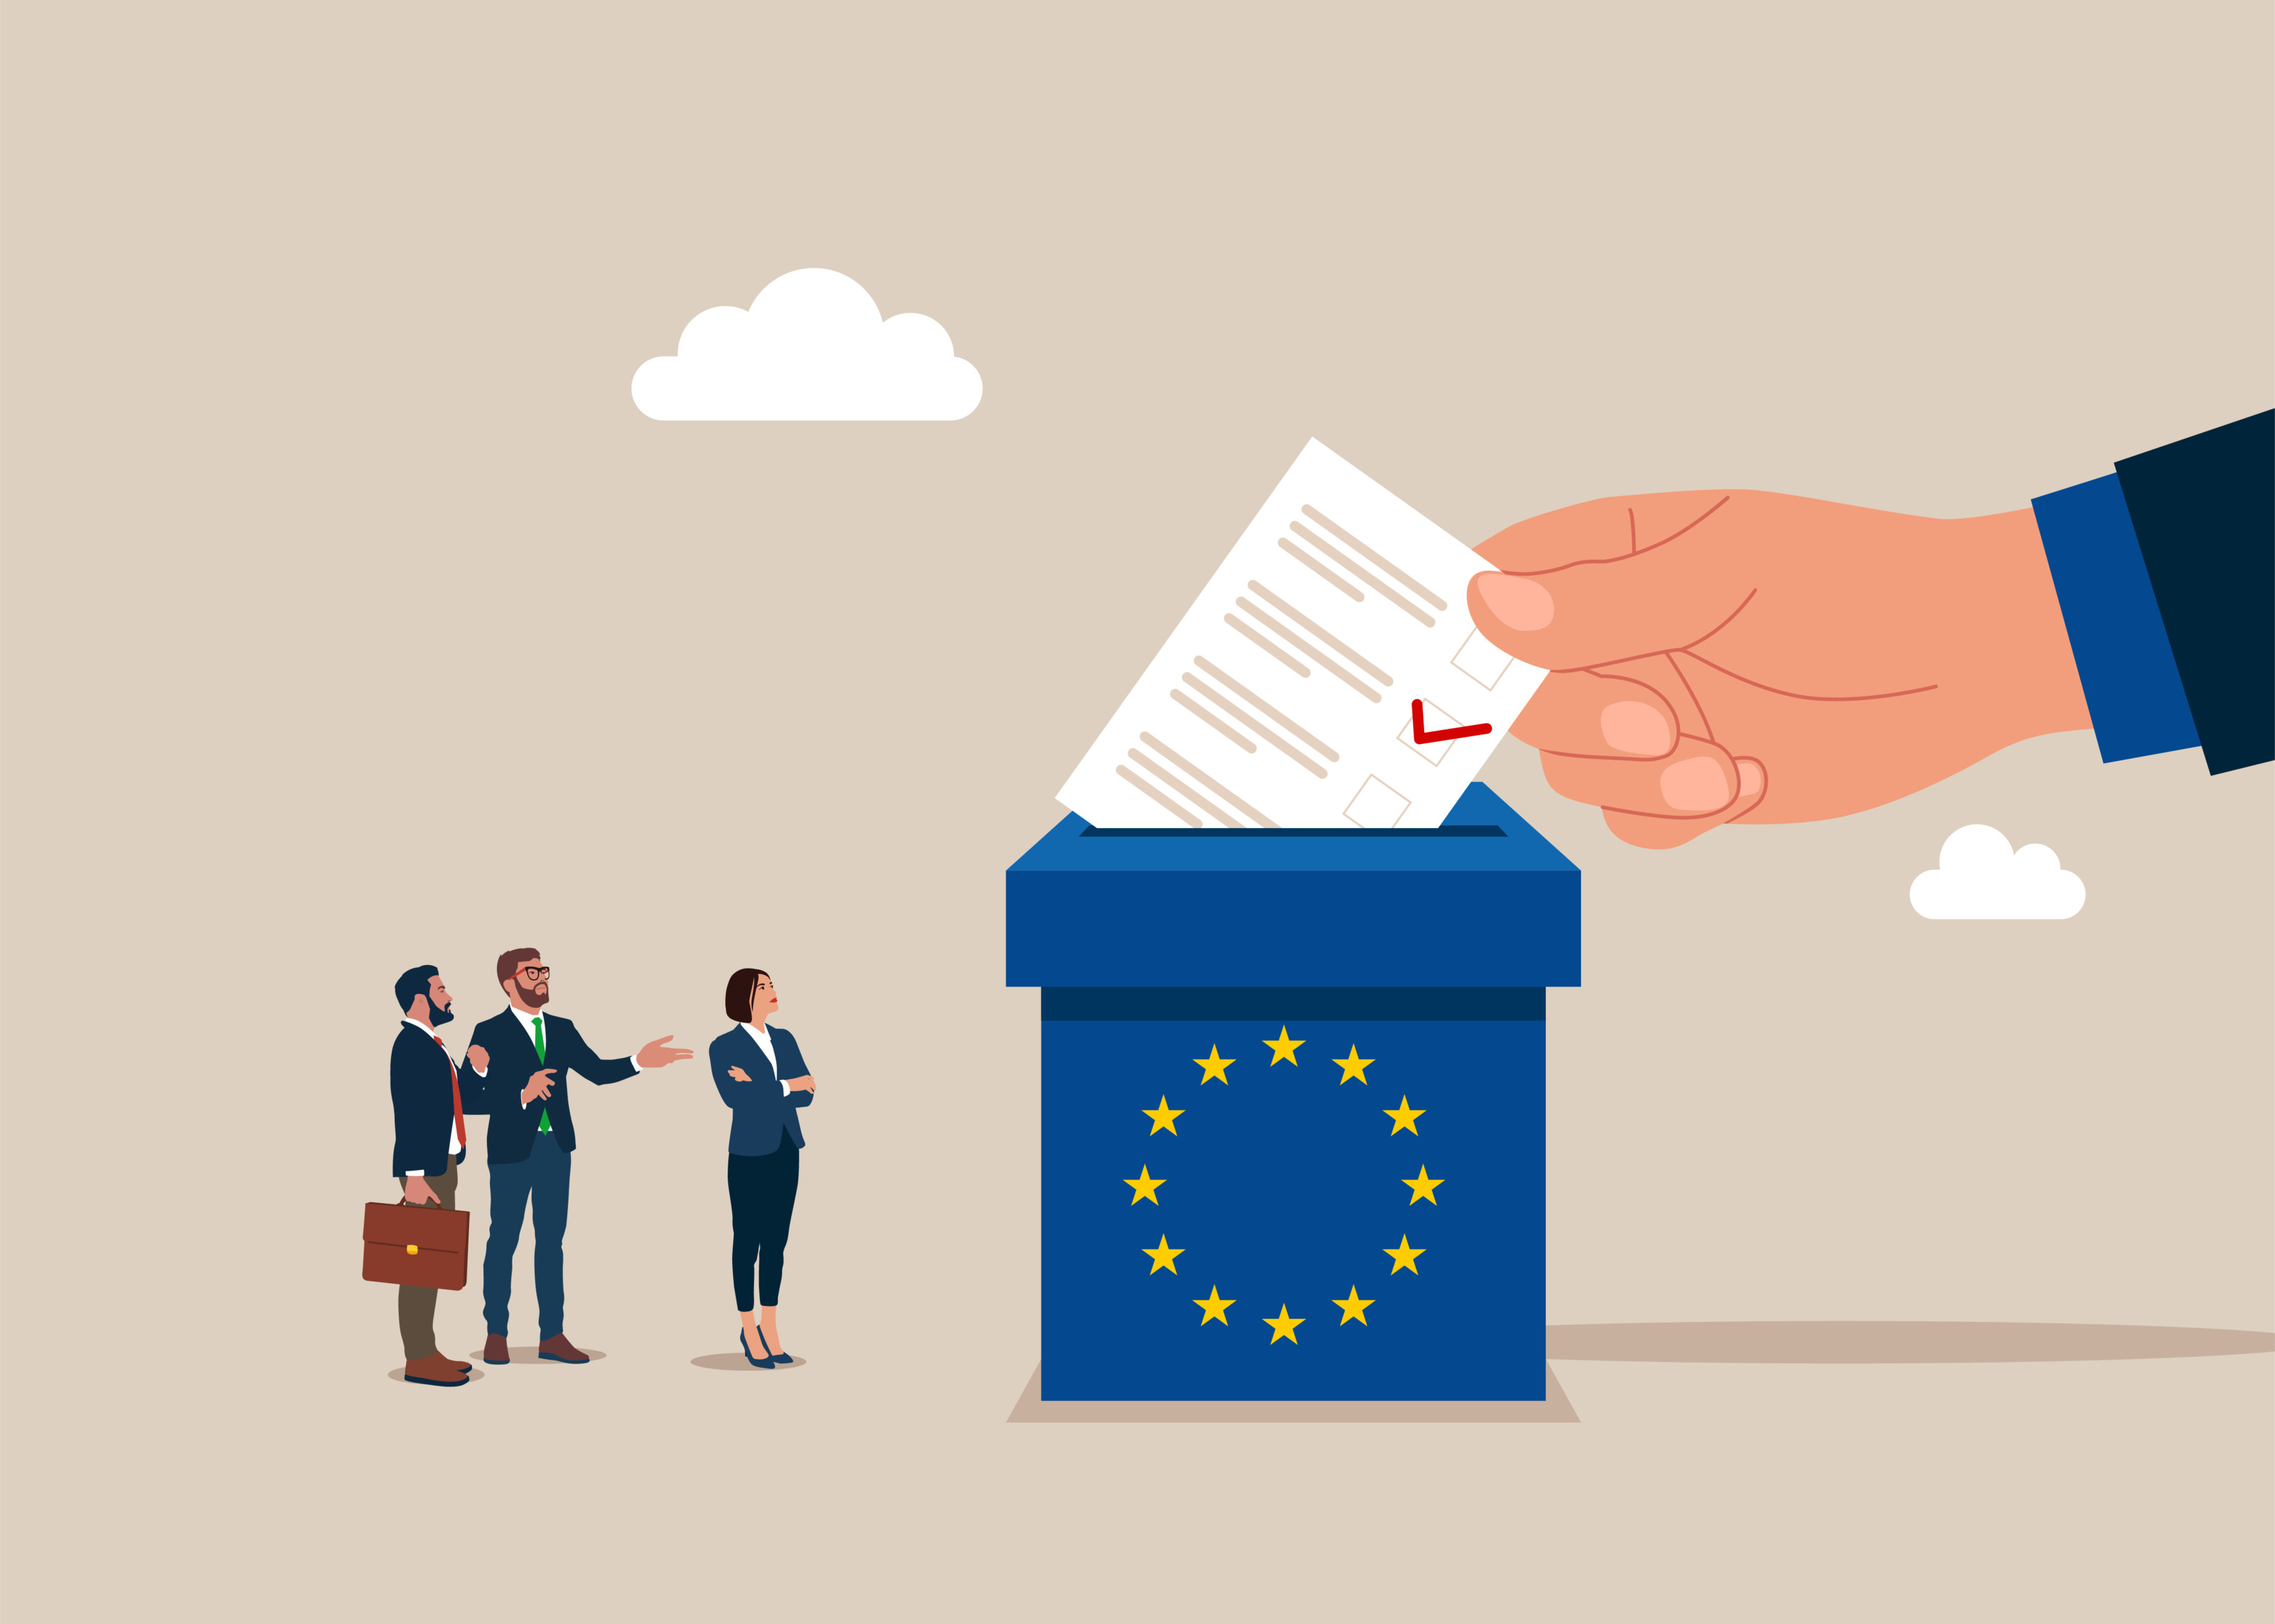 Illustration zur Europawahl: Drei Personen stehen vor große blaue Urne mit im Kreis verlaufenden blauen Sternen in die Hand einen Zettel mit rotem Haken wirft